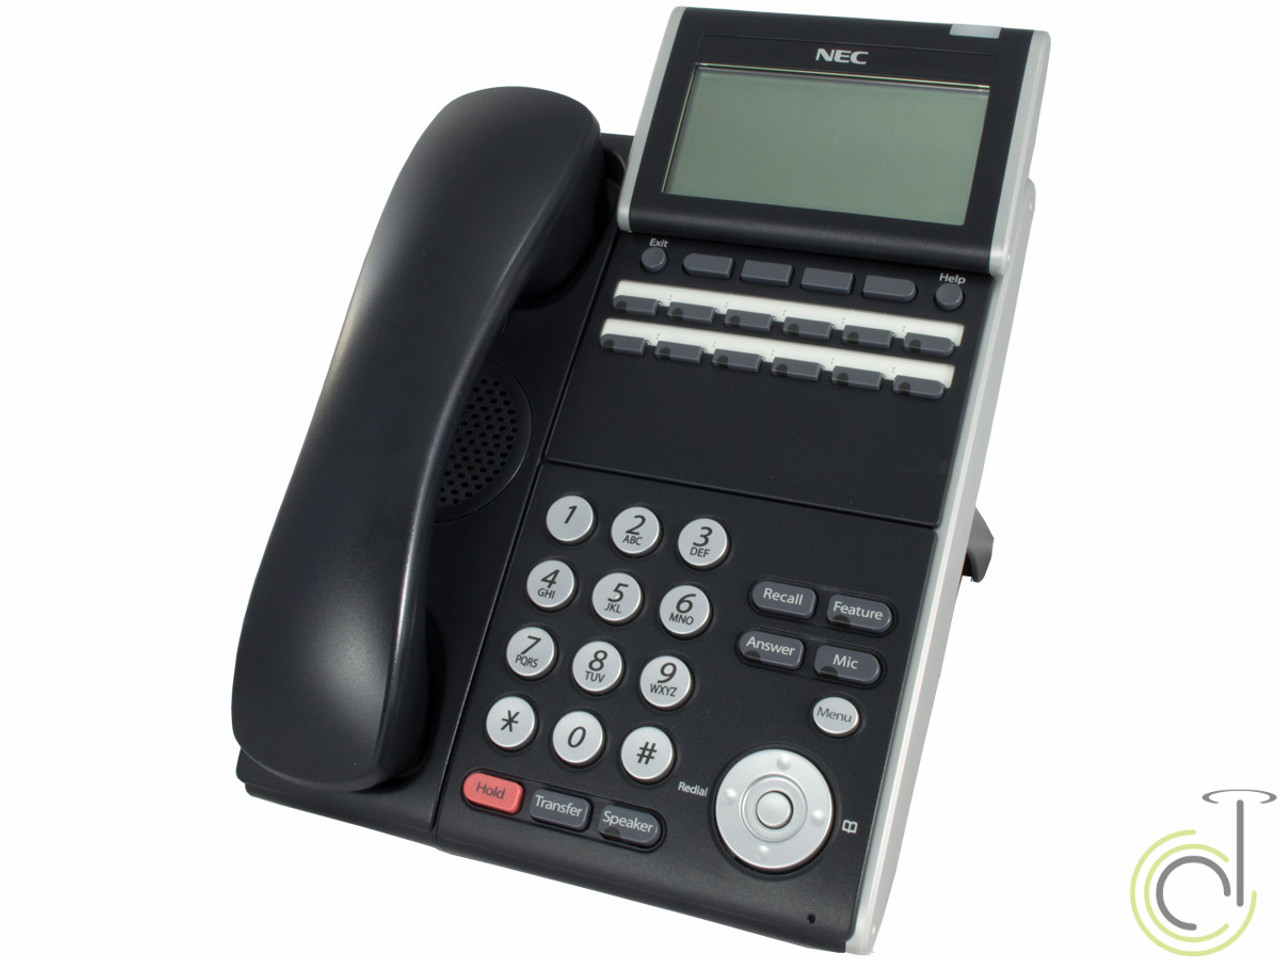 NEC ITL-12D-1 DT730 IP Phone